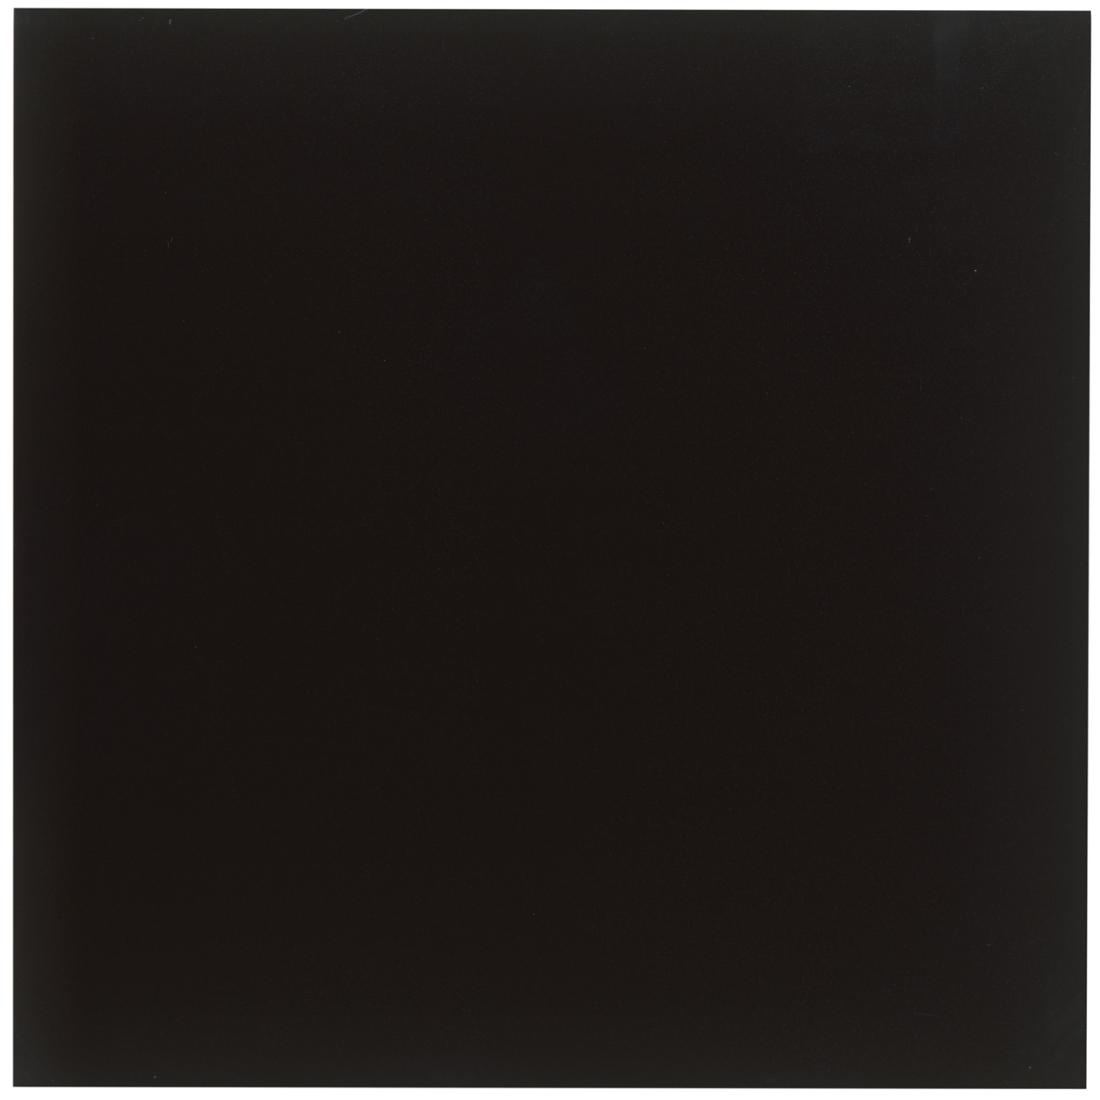 Colorgloss Black 44x44cm